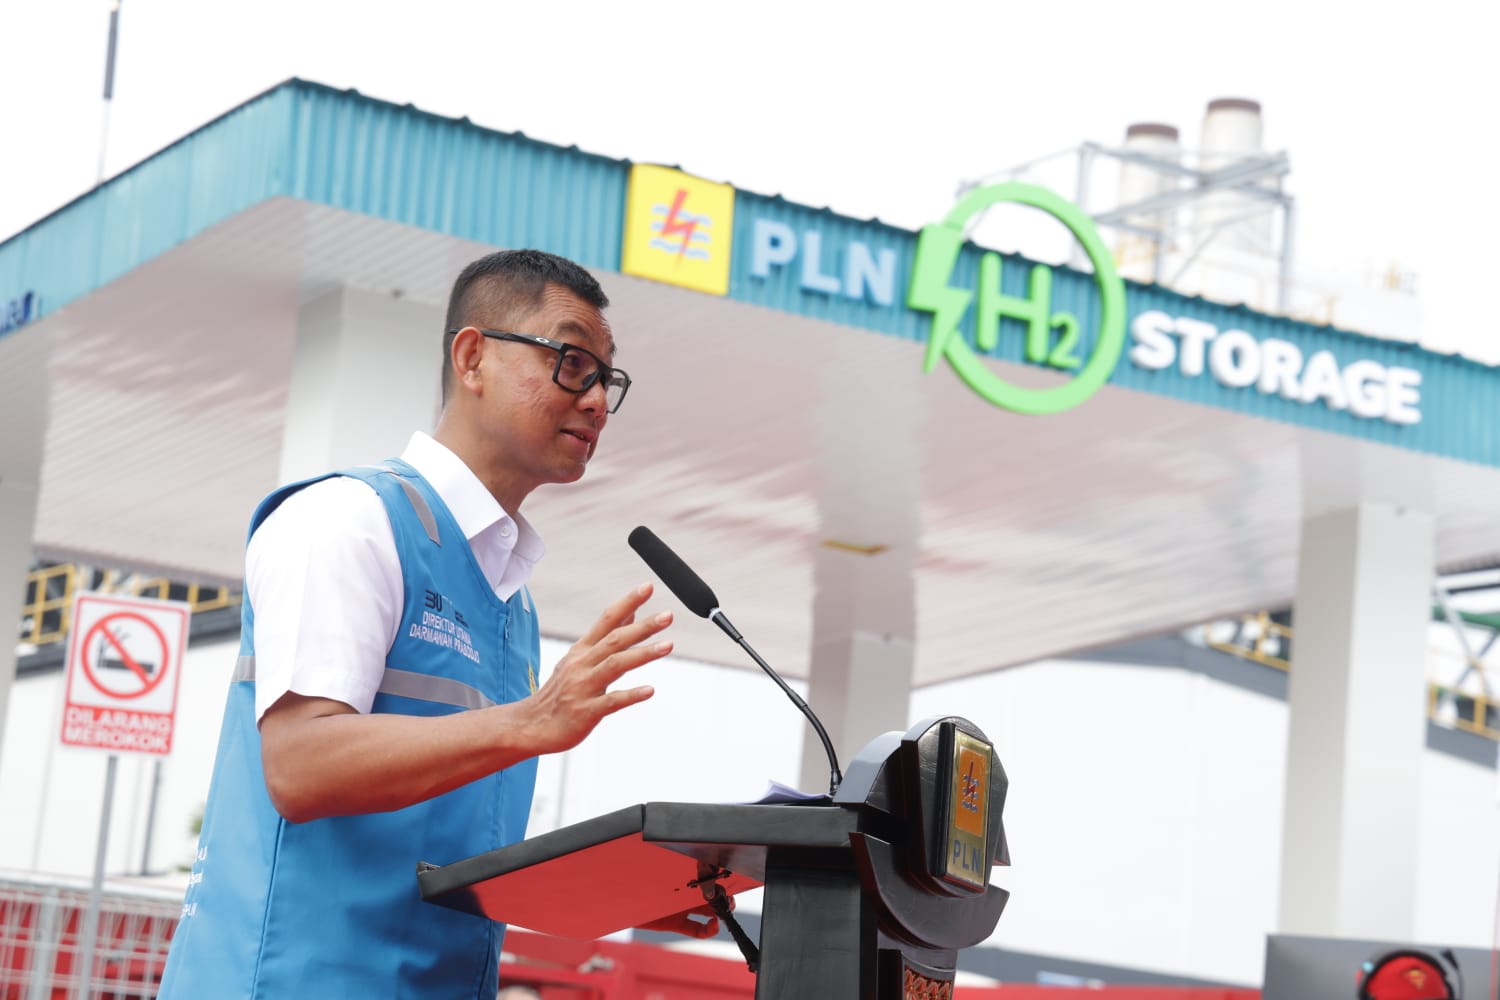 Direktur Utama PT PLN (Persero) Darmawan Prasodjo menjelaskan bahwa penggunaan kendaraan hidrogen sebagai transportasi masa depan lebih hemat jika dibandingkan dengan kendaraan berbasis Bahan Bakar Minyak (BBM), bahkan kendaraan listrik. Hal tersebut disampaikannya ketika meresmikan Hydrogen Refueling Station (HRS) di Kawasan Senayan, Jakarta pada Rabu (21/2).